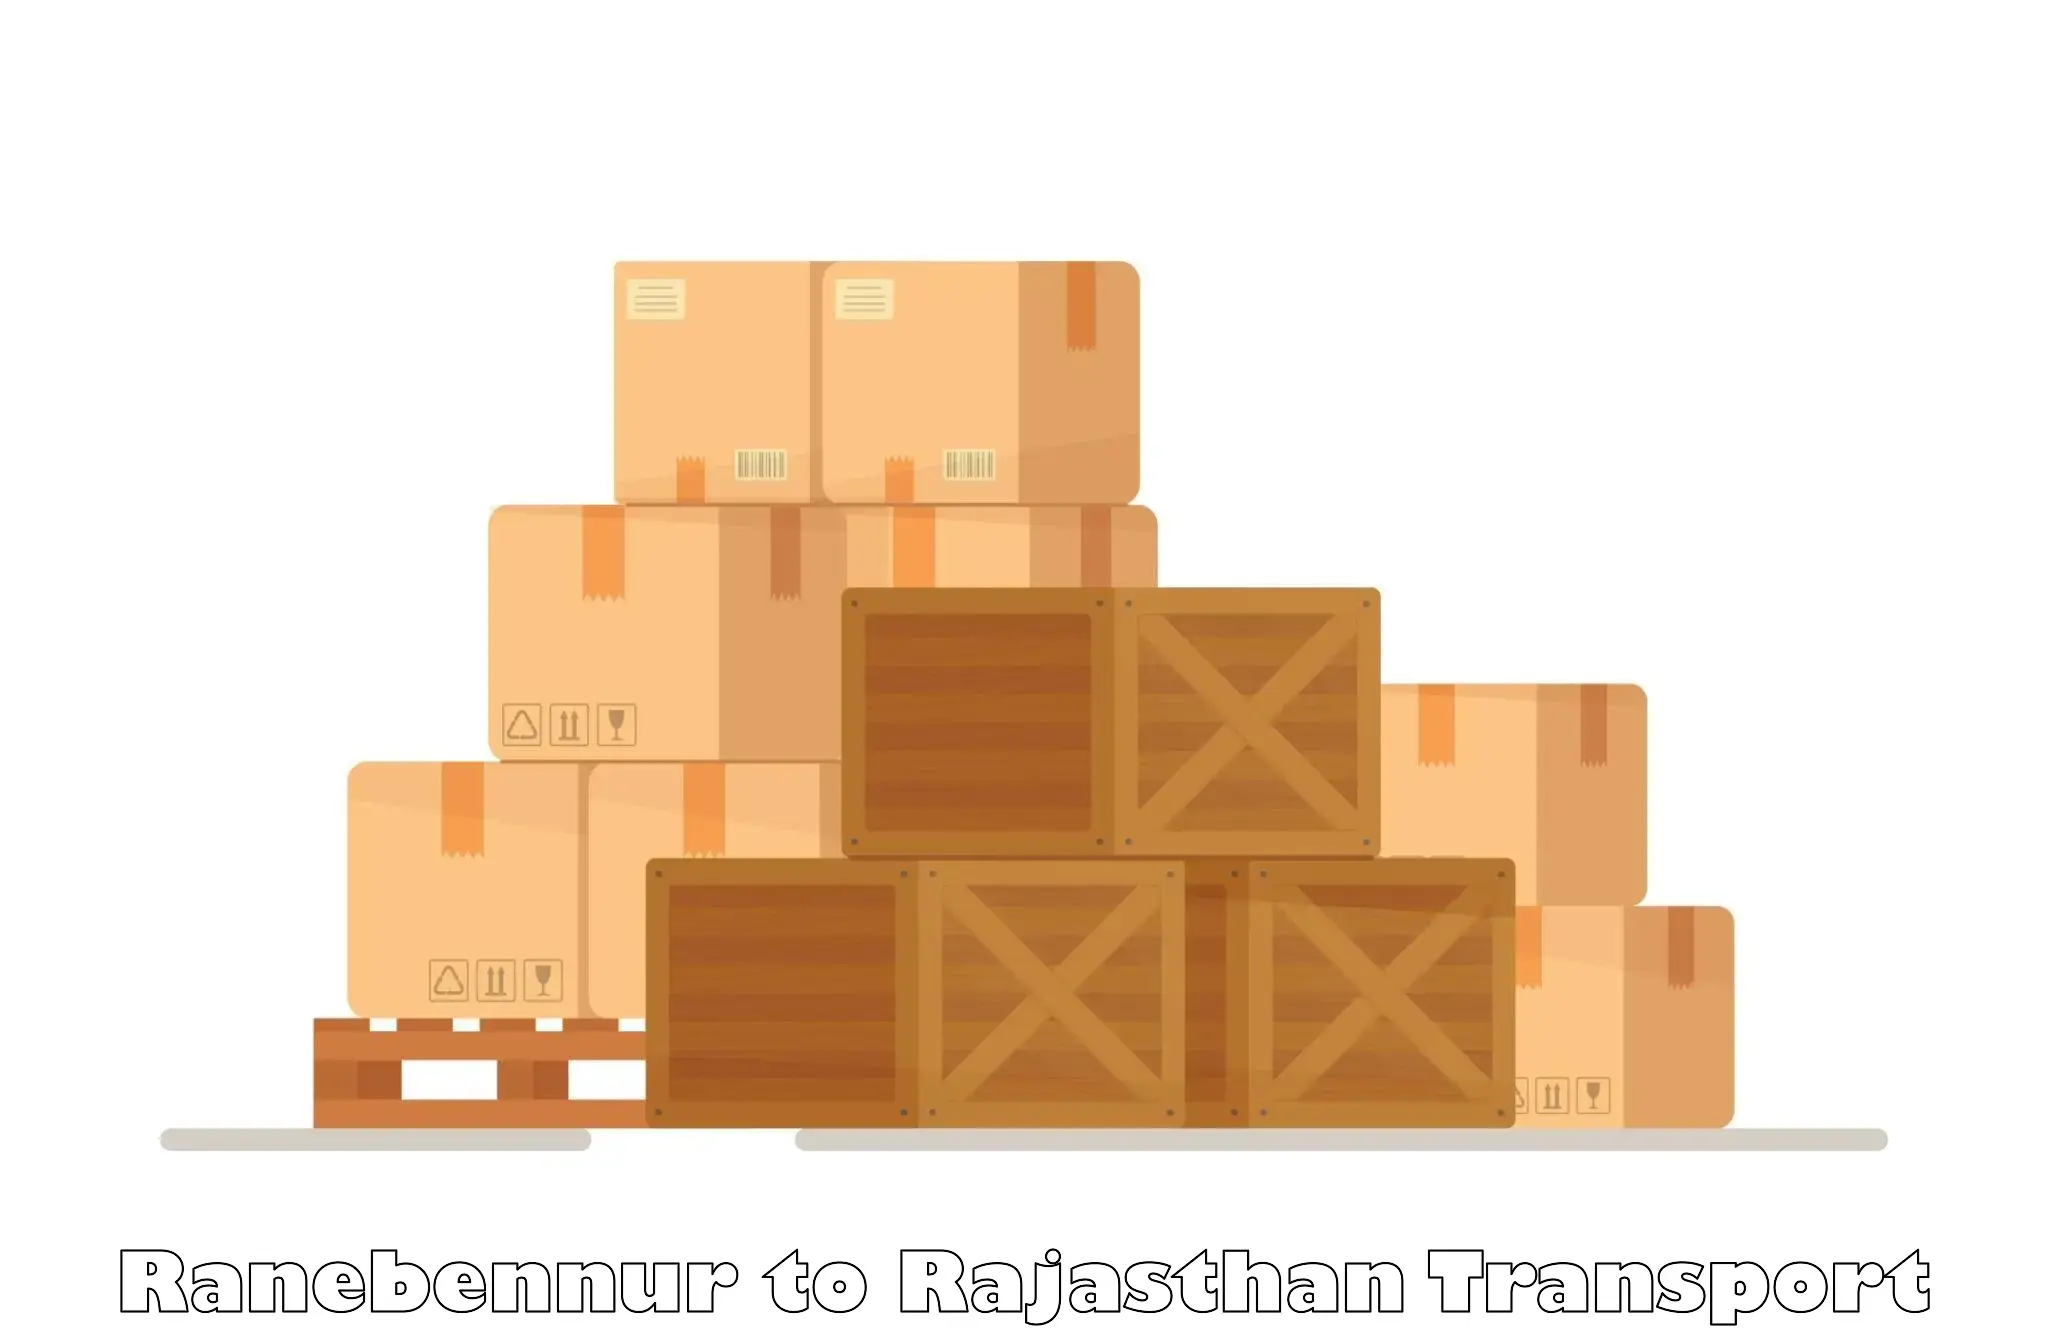 Container transport service Ranebennur to Jhadol